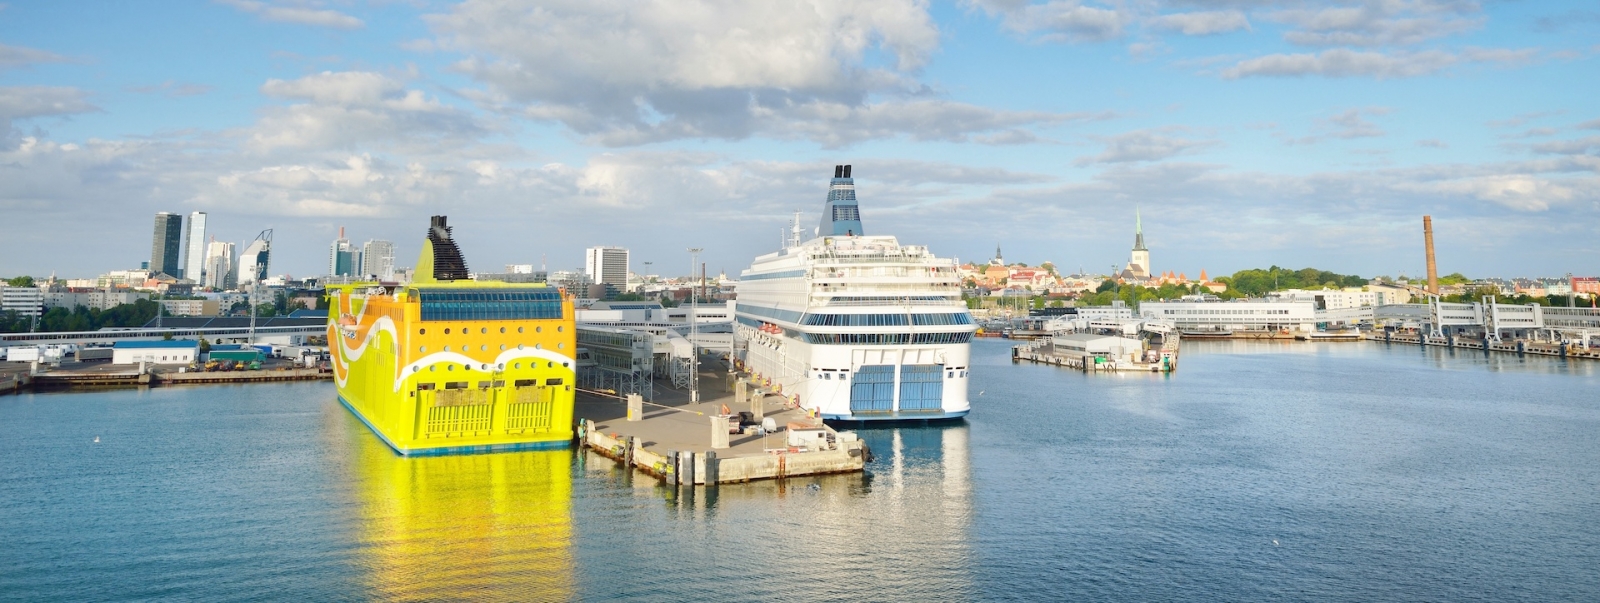 Barco de pasajeros (crucero) anclado en el puerto de Tallin, Estonia.  Mar Báltico.  Edificios y monumentos del casco antiguo al fondo.  Fin de semana, turismo, actividad de ocio, recreación, turismo.